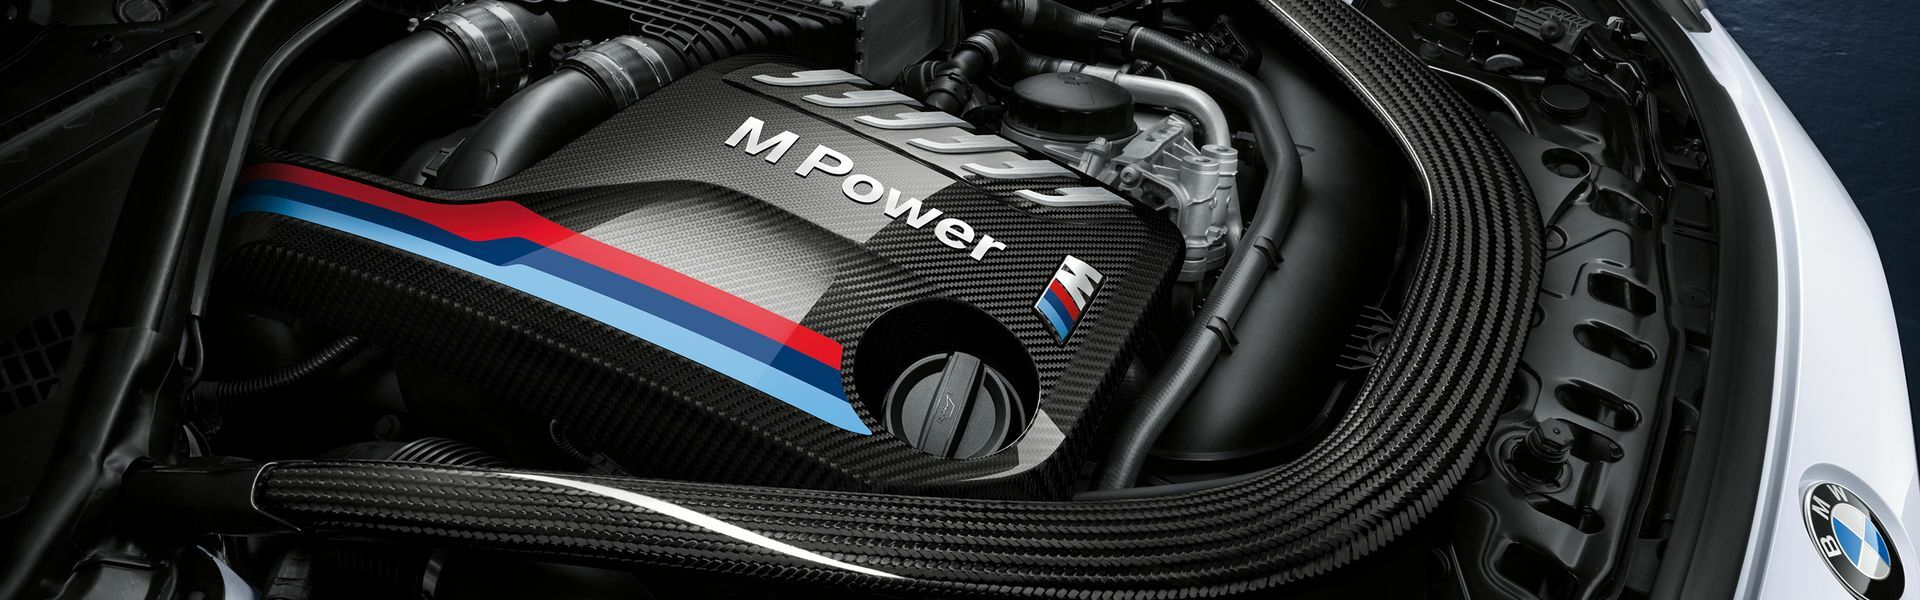 Zvýšení výkonu/ Softwarové úpravy/ Drobné performance díly pro automobil Porsche Panamera 4S / Sport Turismo 971